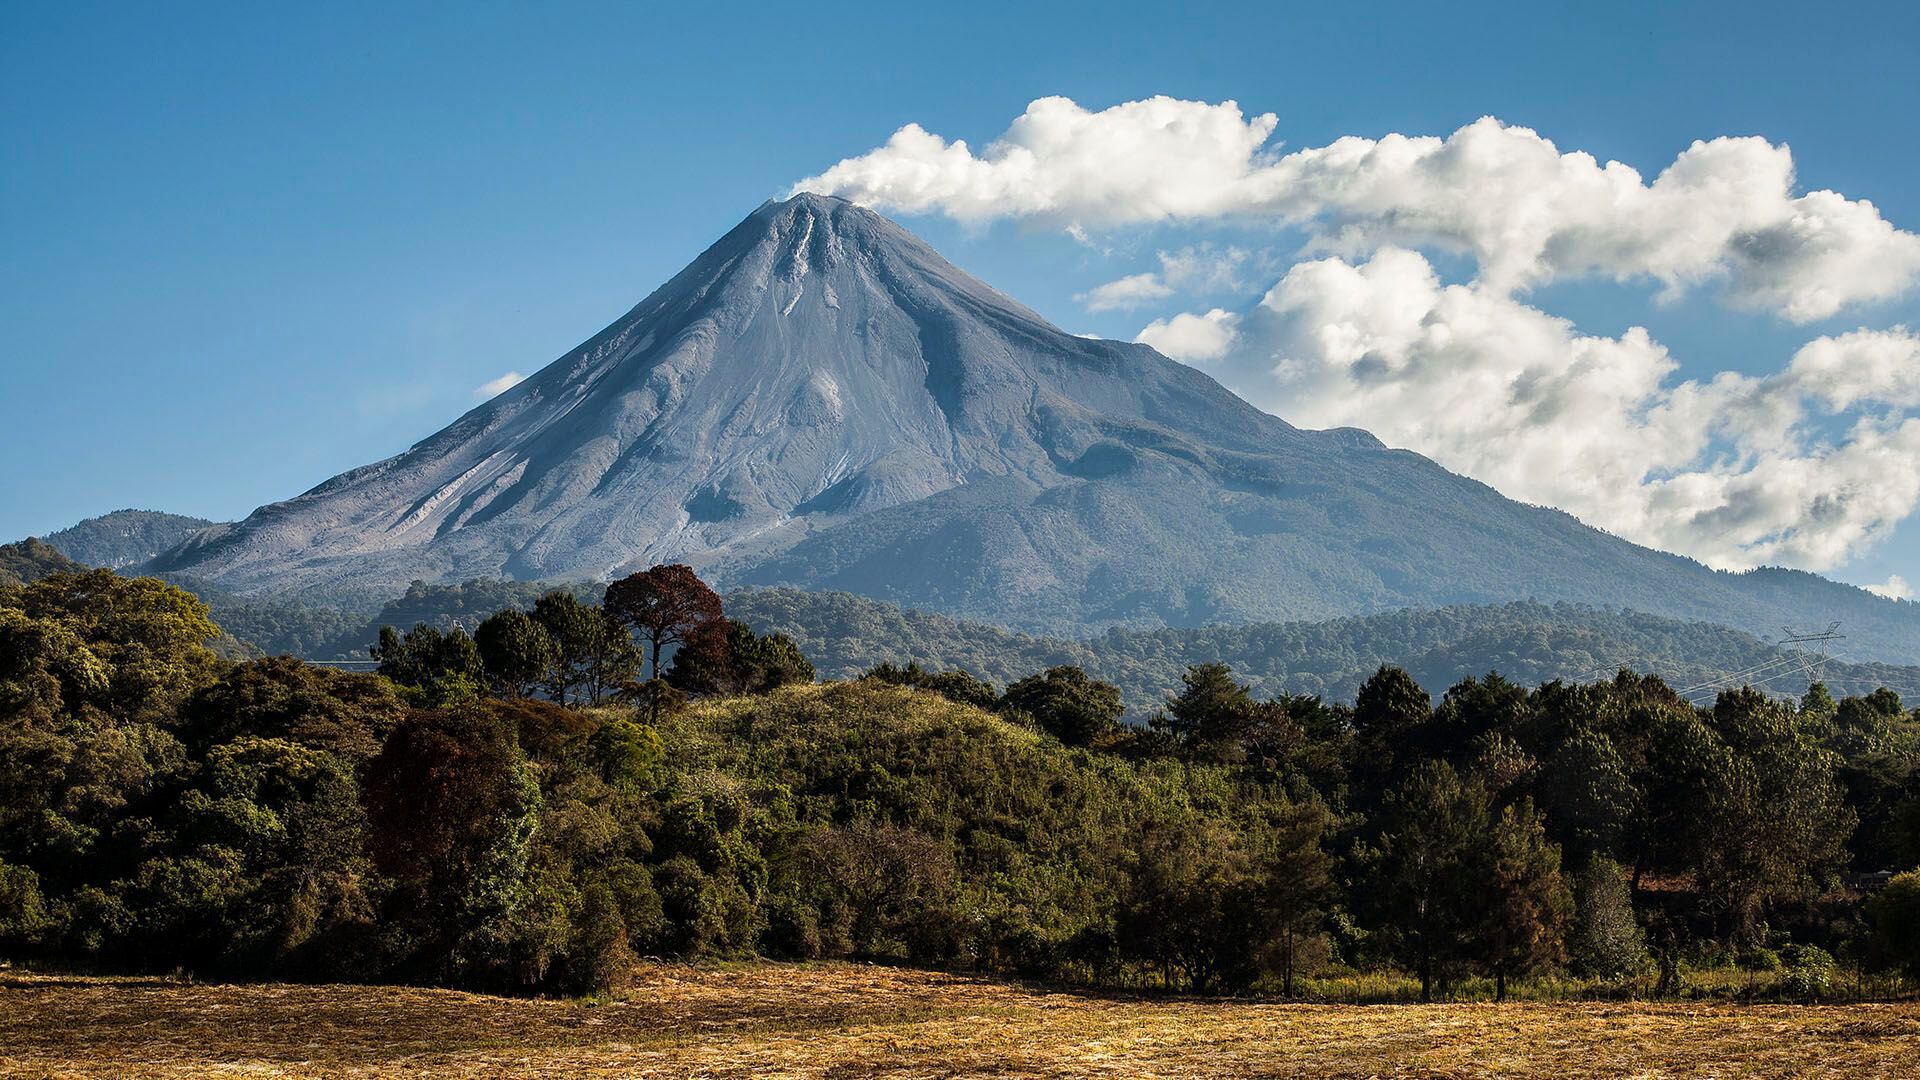 Volcán de Colima está activo y en vigilancia constante. (Archivo)